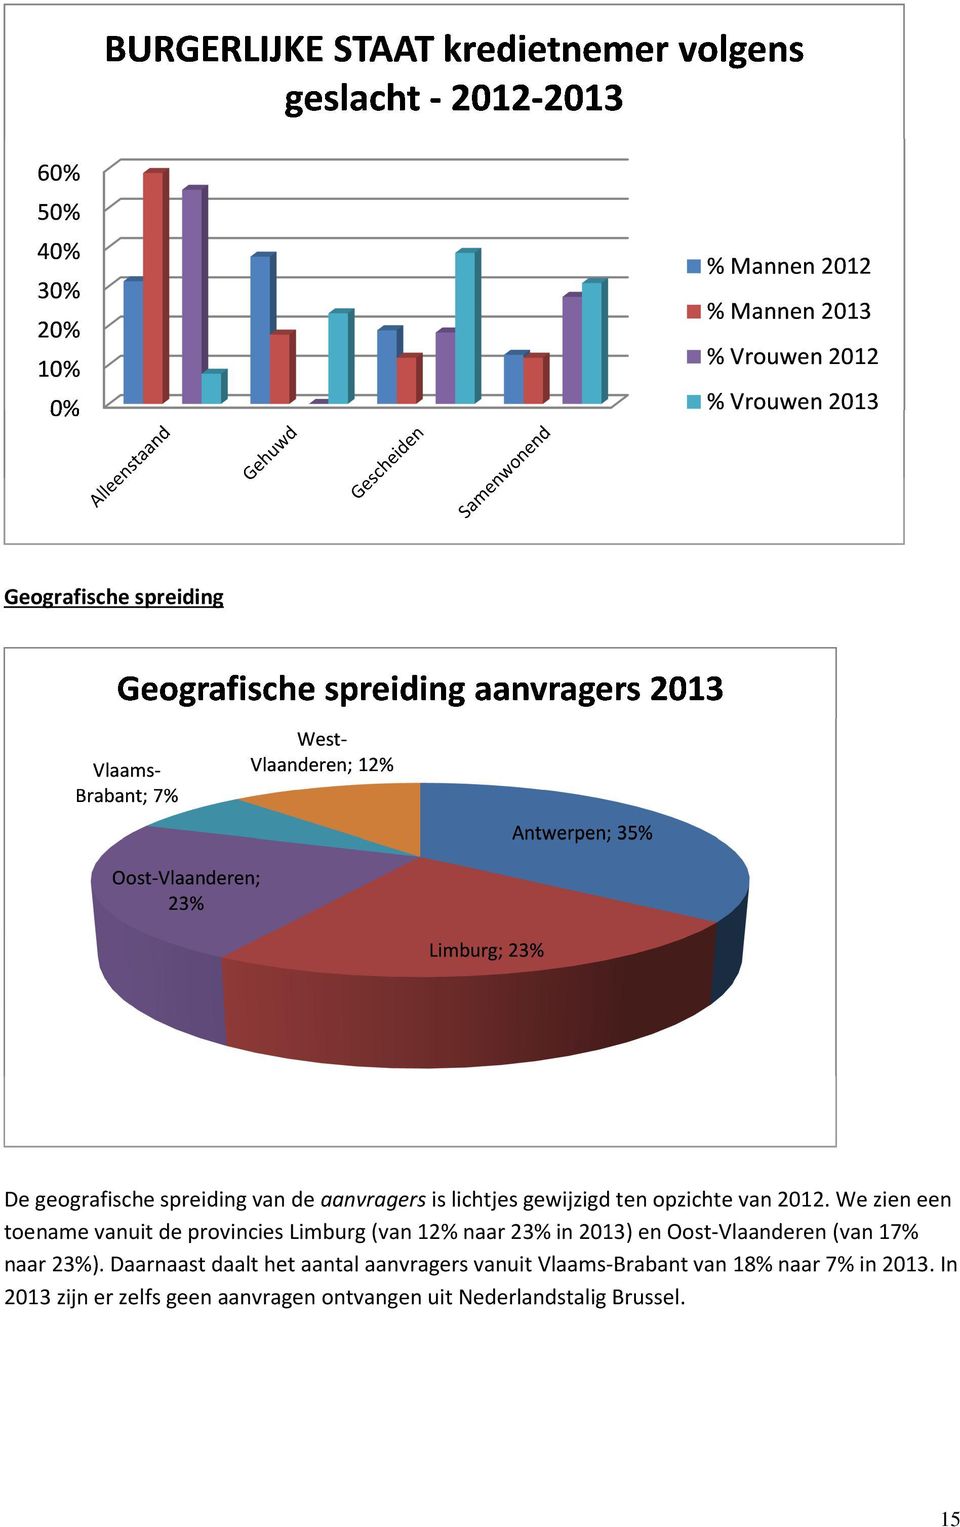 We zien een toename vanuit de provincies Limburg (van 12% naar 23% in 2013) en Oost-Vlaanderen